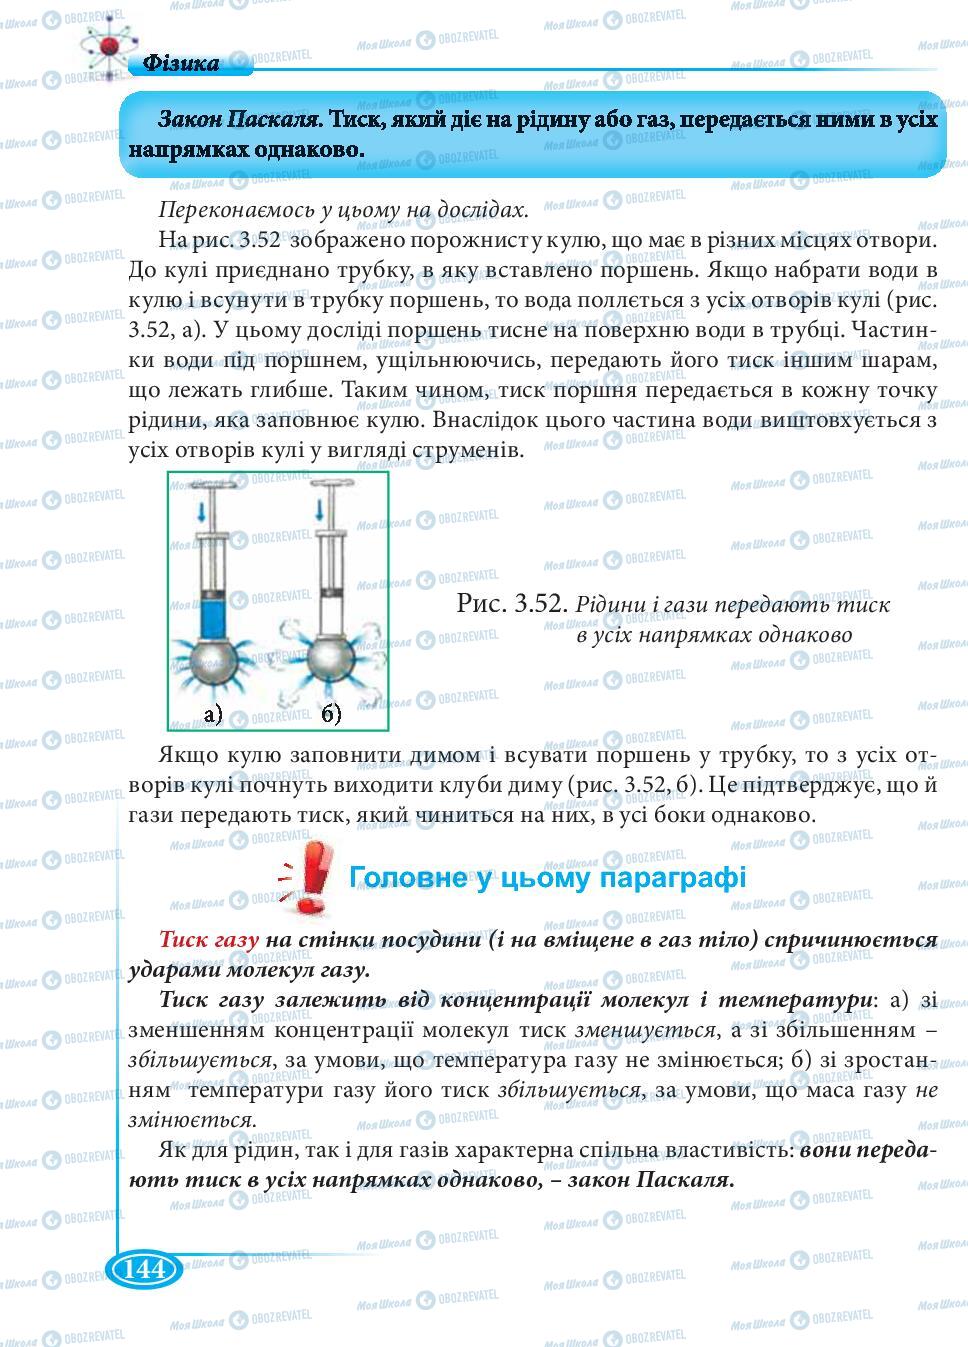 Підручники Фізика 7 клас сторінка 144